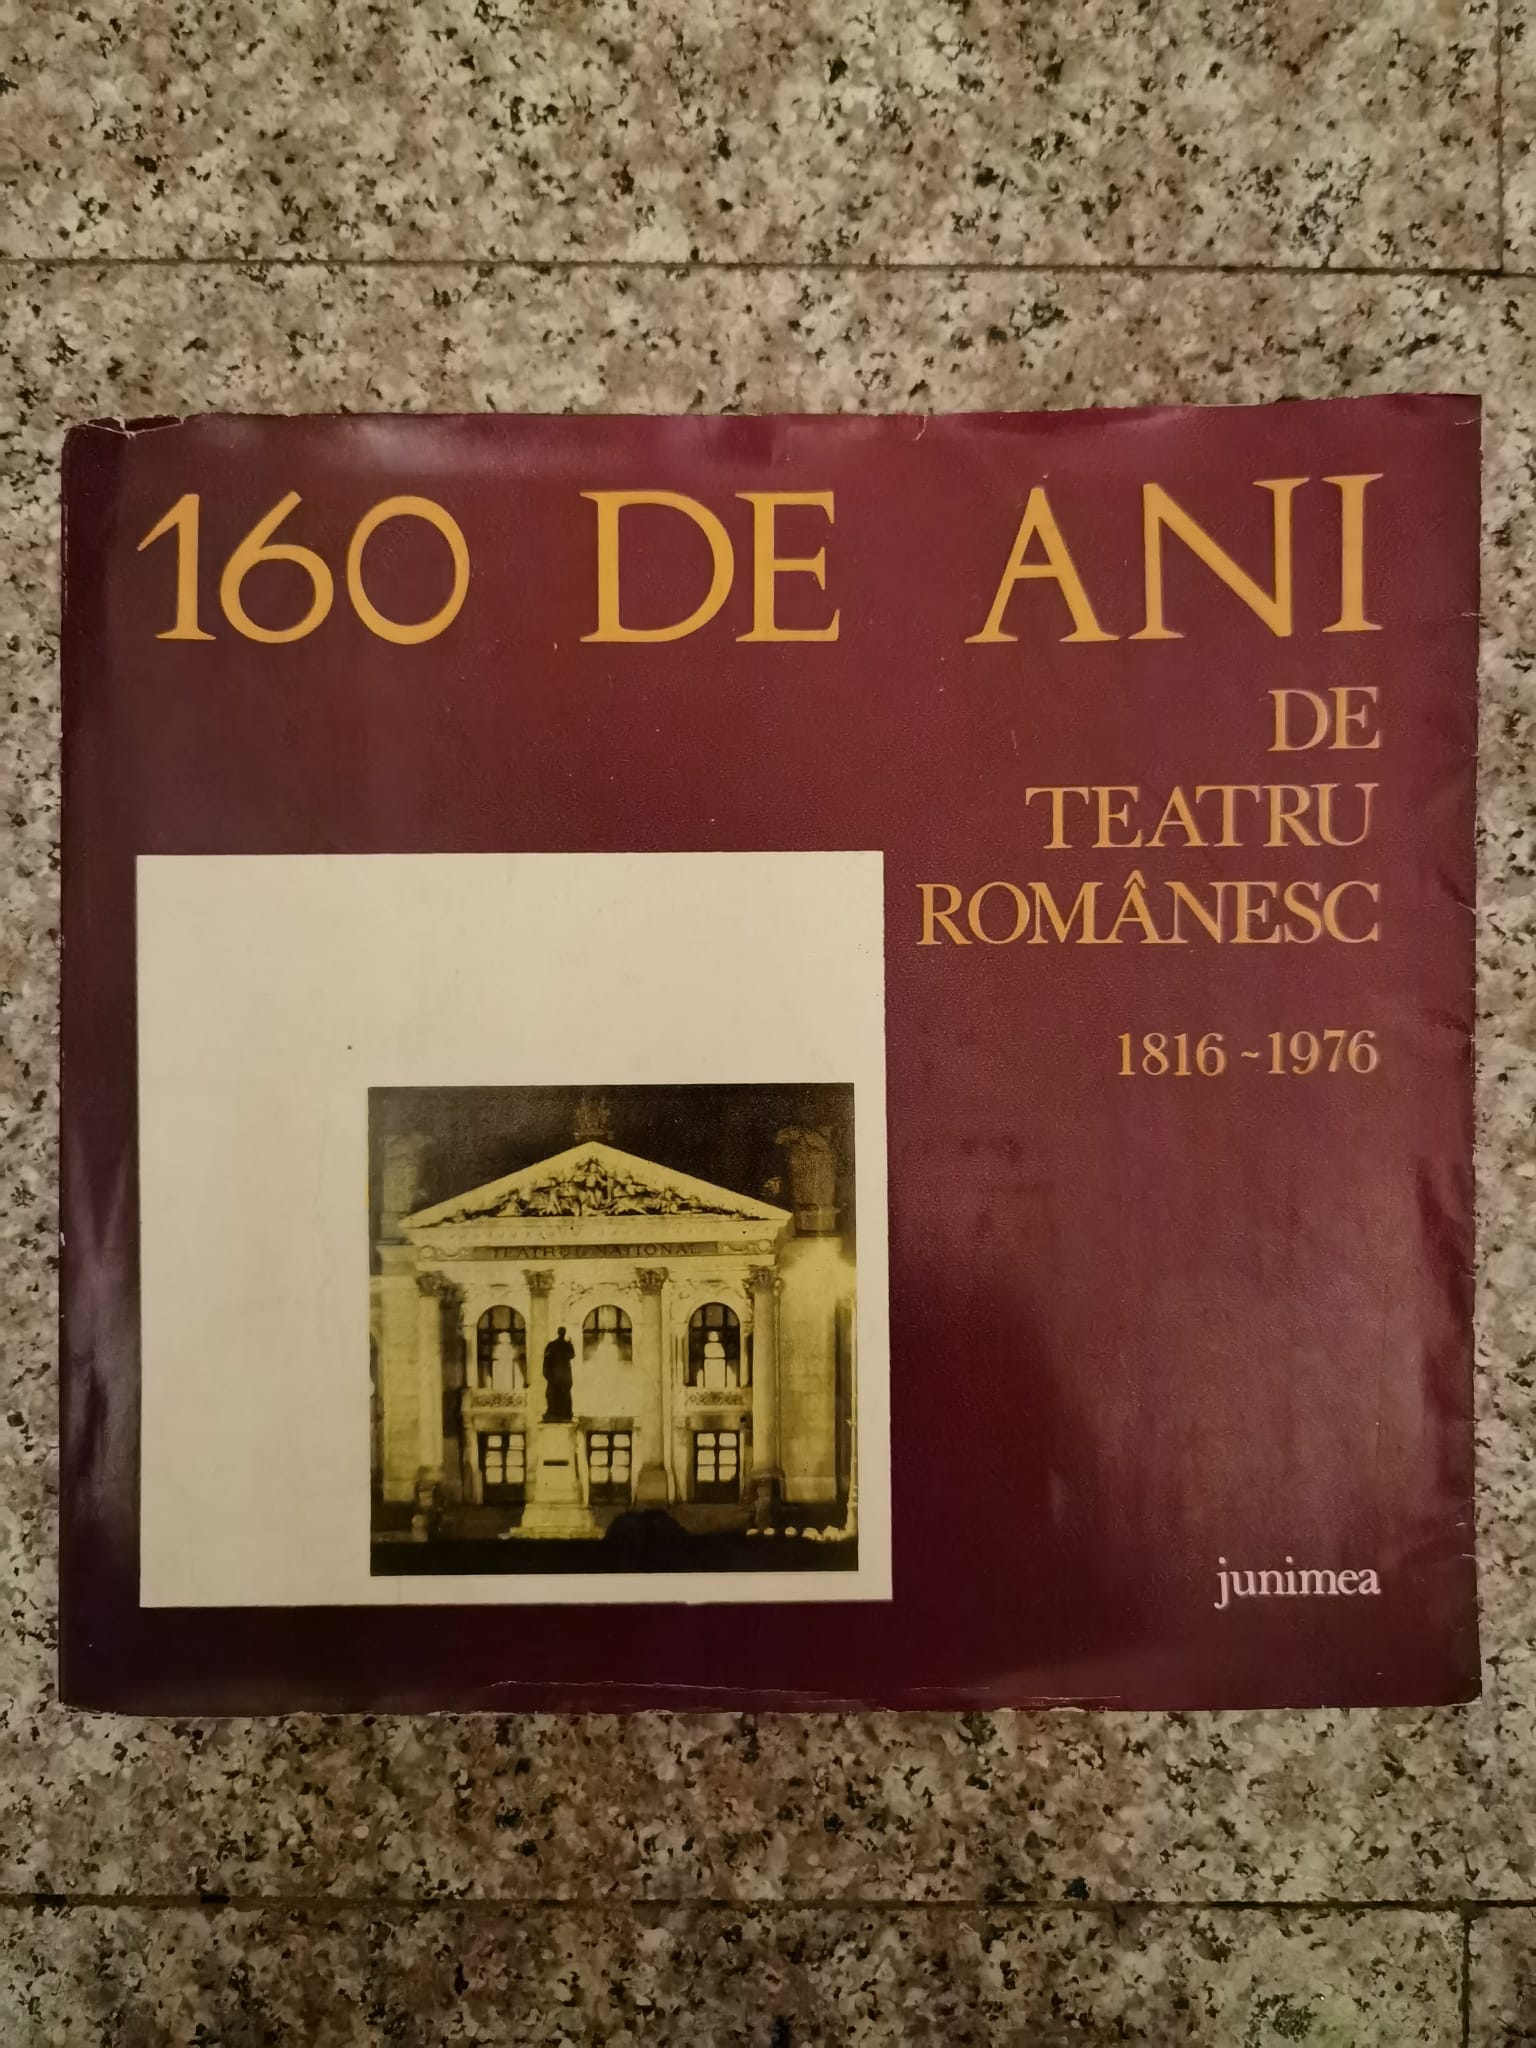 160 de ani de teatru romanesc 1816-1976                                                              colectiv                                                                                            